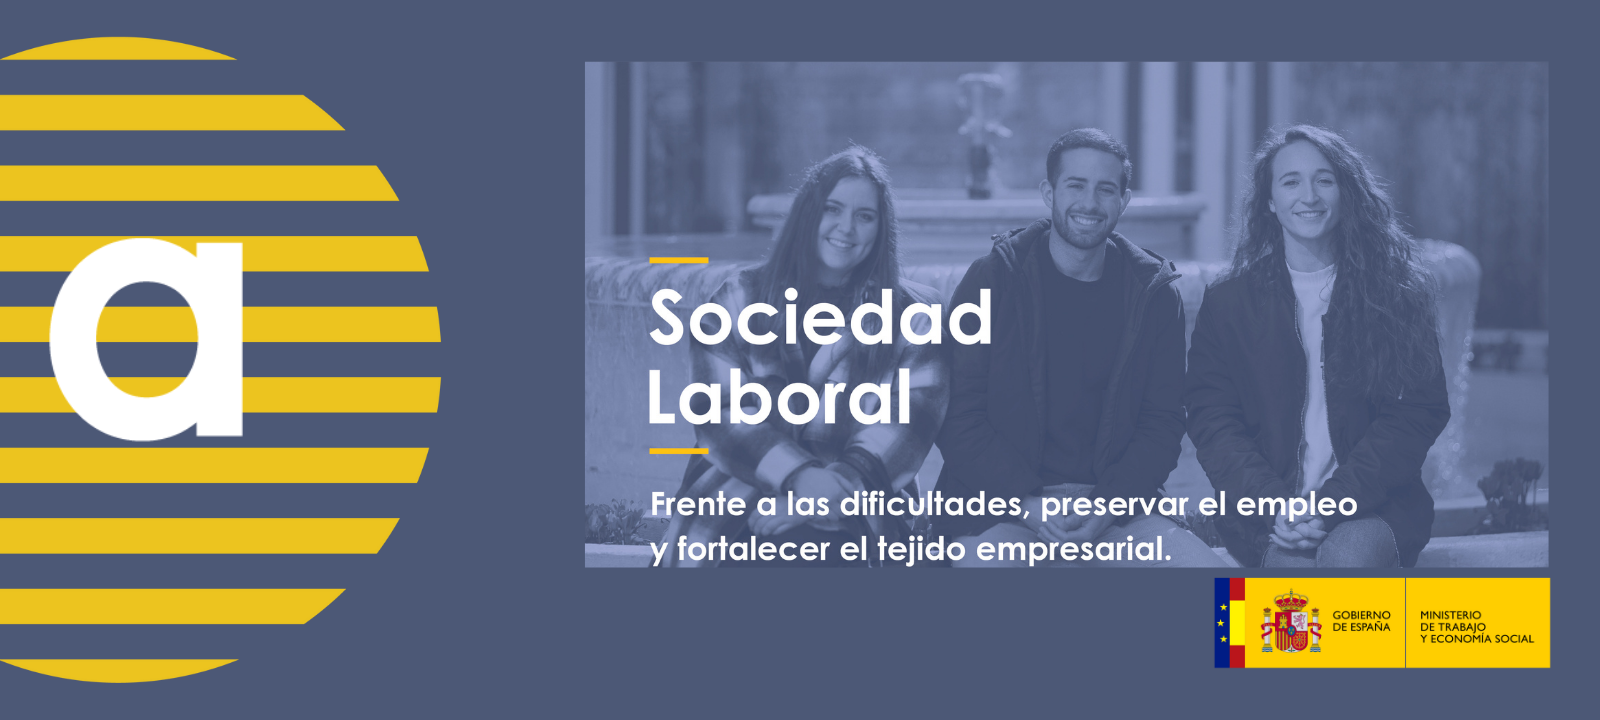 Sociedad Laboral